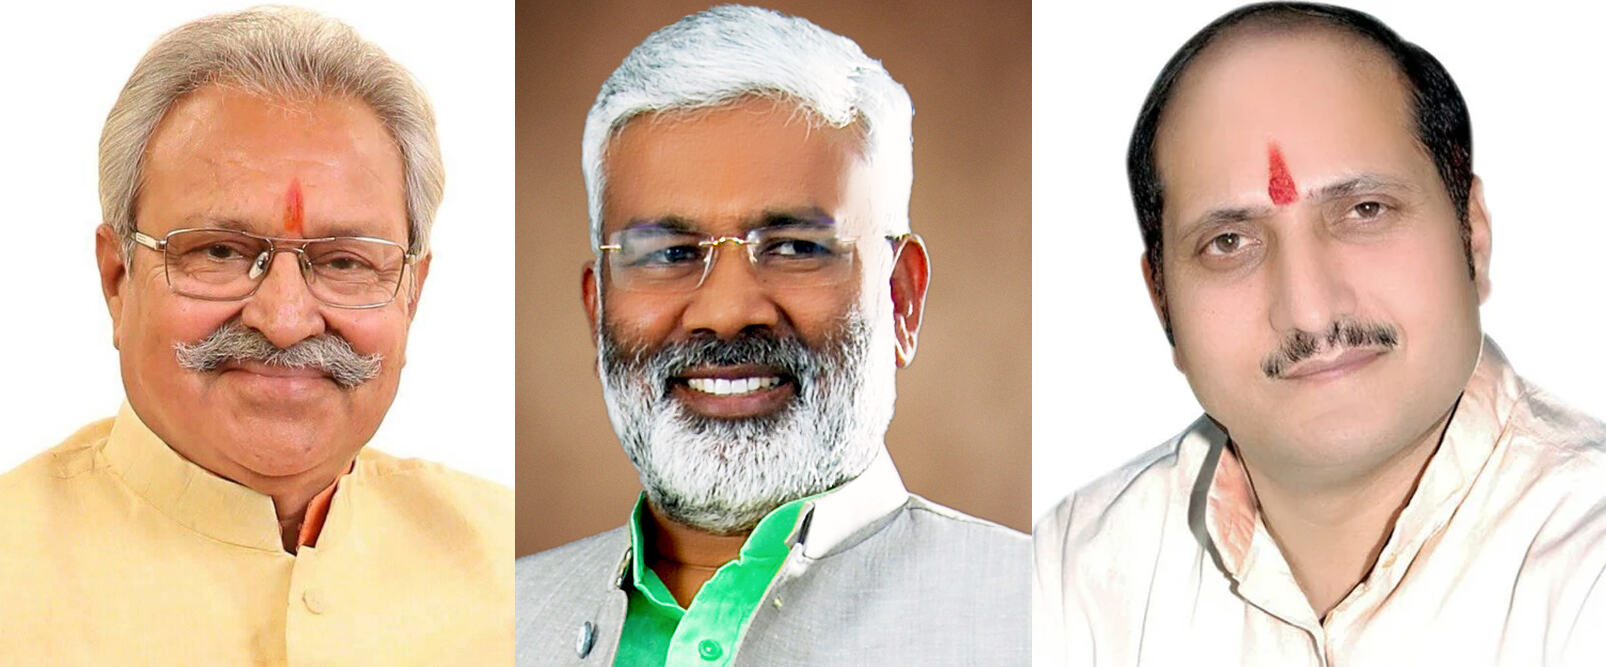 यूपी के 6 नेता गुजरात चुनाव में कराएंगे बीजेपी की नैया पार